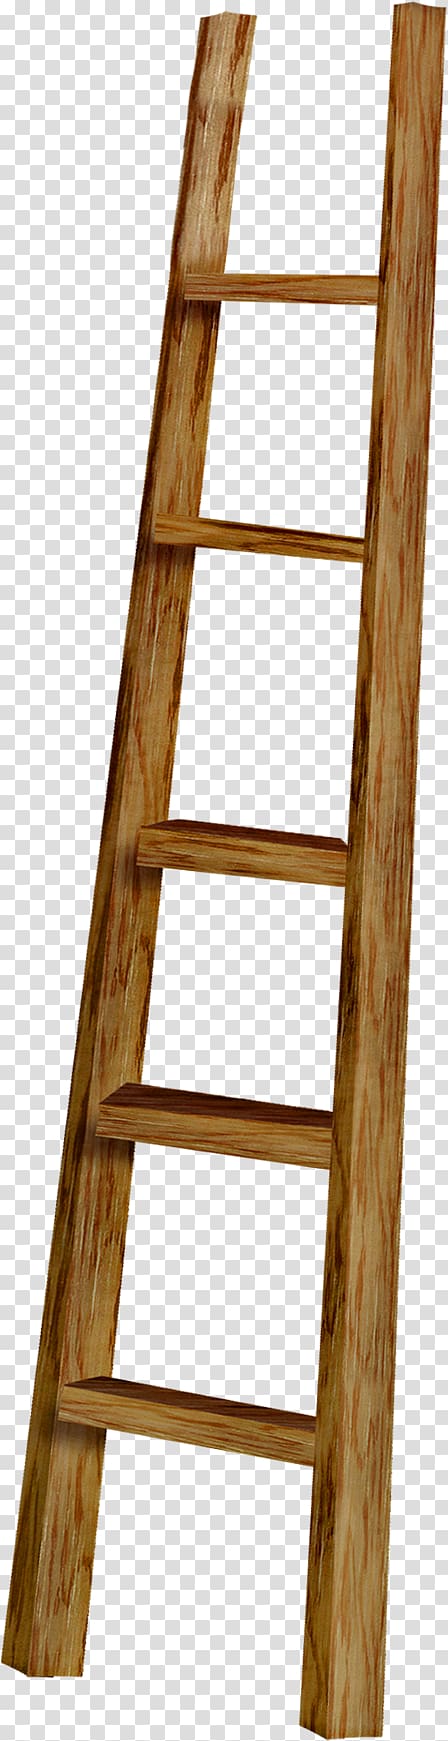 Ladder Wood, ladder transparent background PNG clipart